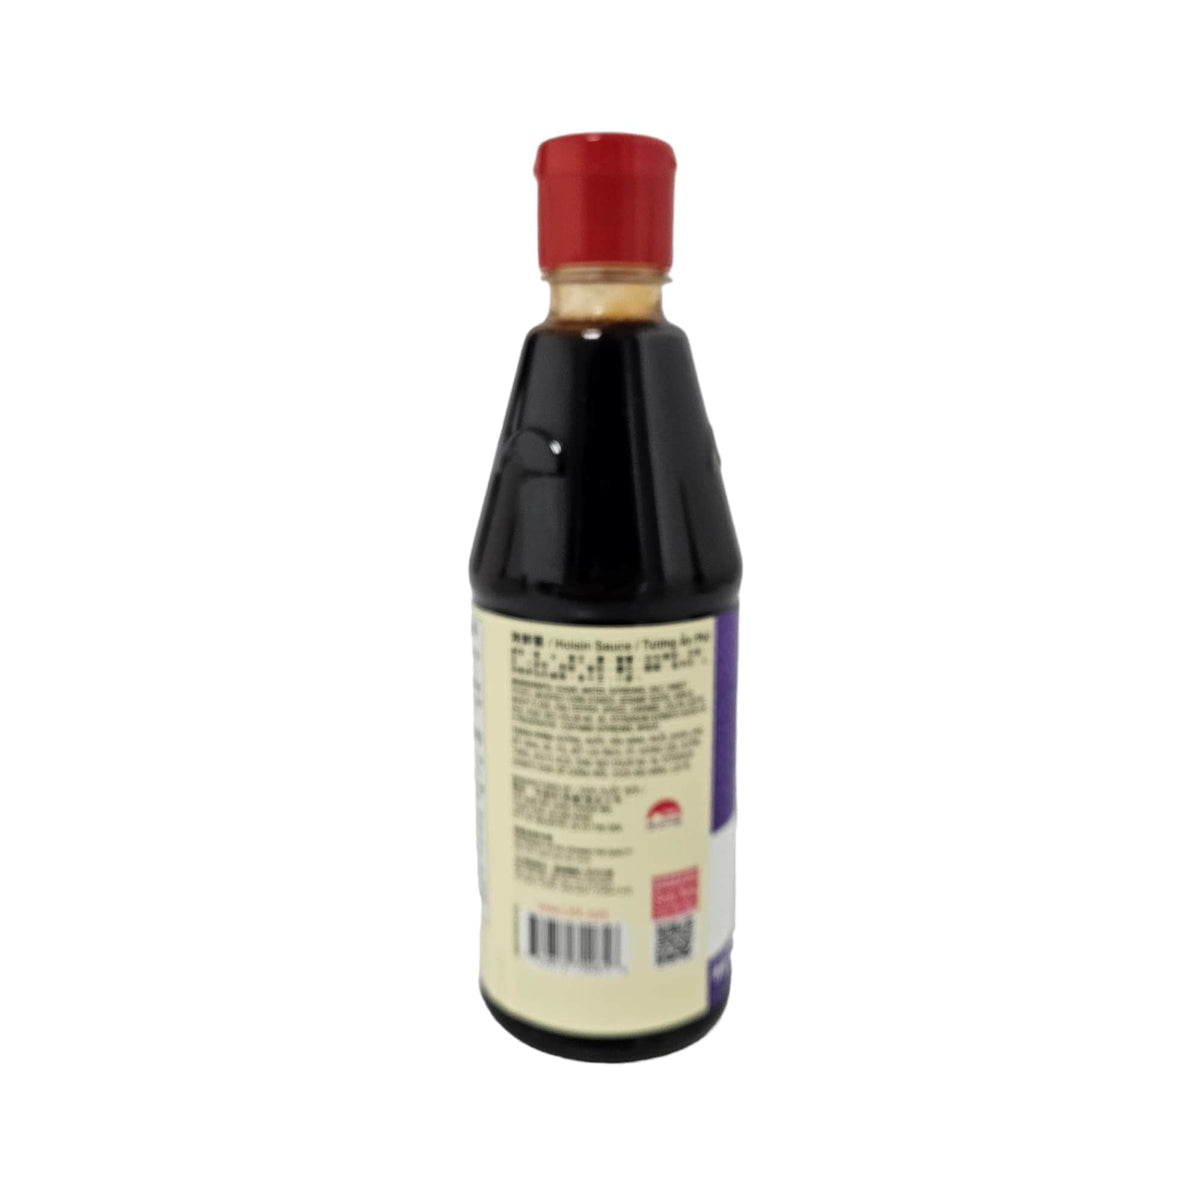 Lee Kum Kee Sauce hoisin bouteille pressable - 443 ml